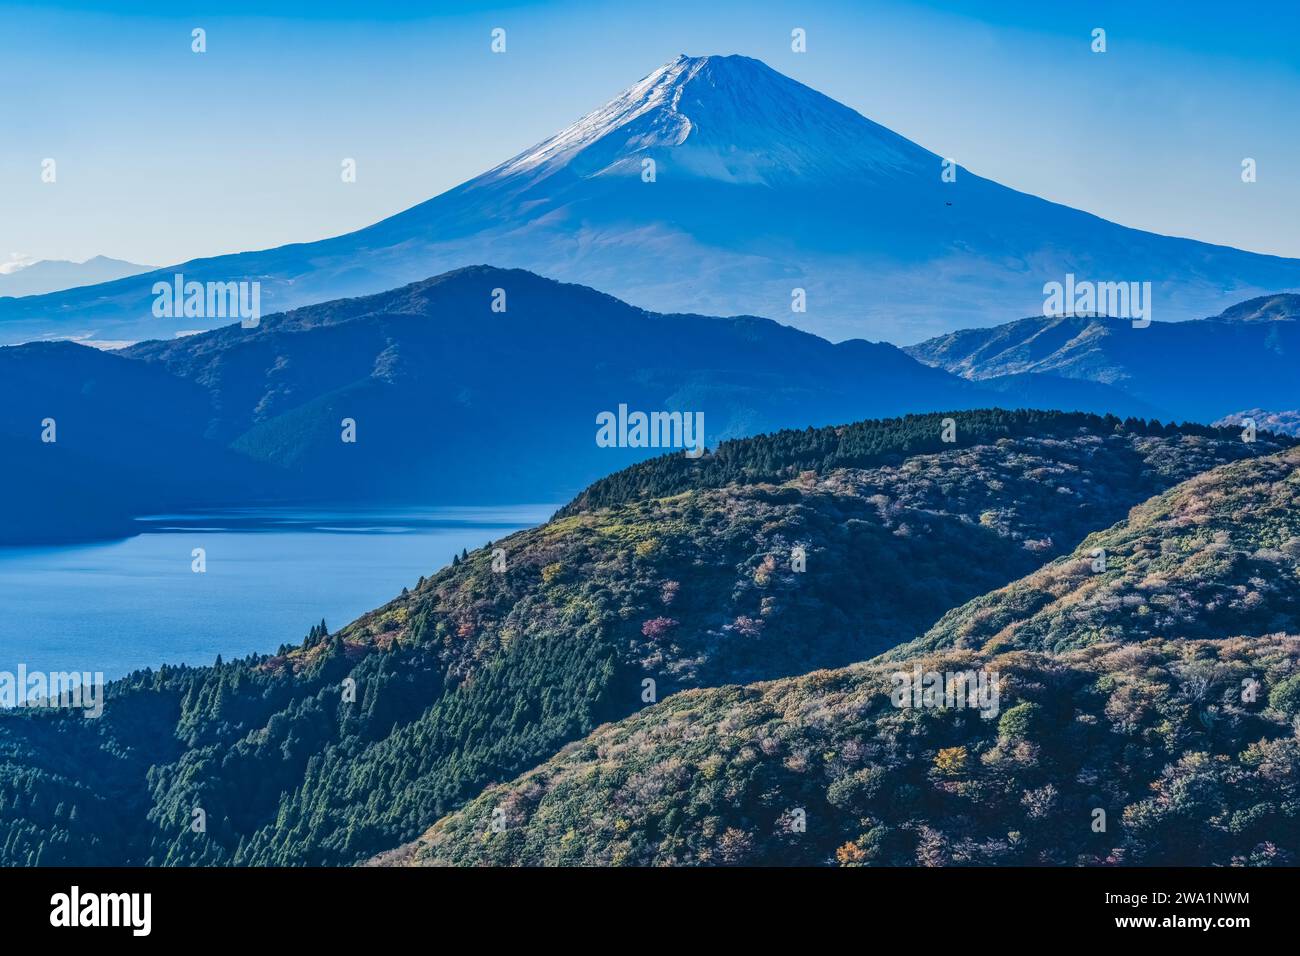 Farbenfroher Hubschrauber Zum Aussichtspunkt Am Mount Fuji Lake Ashiniko Hakone Kan Stockfoto